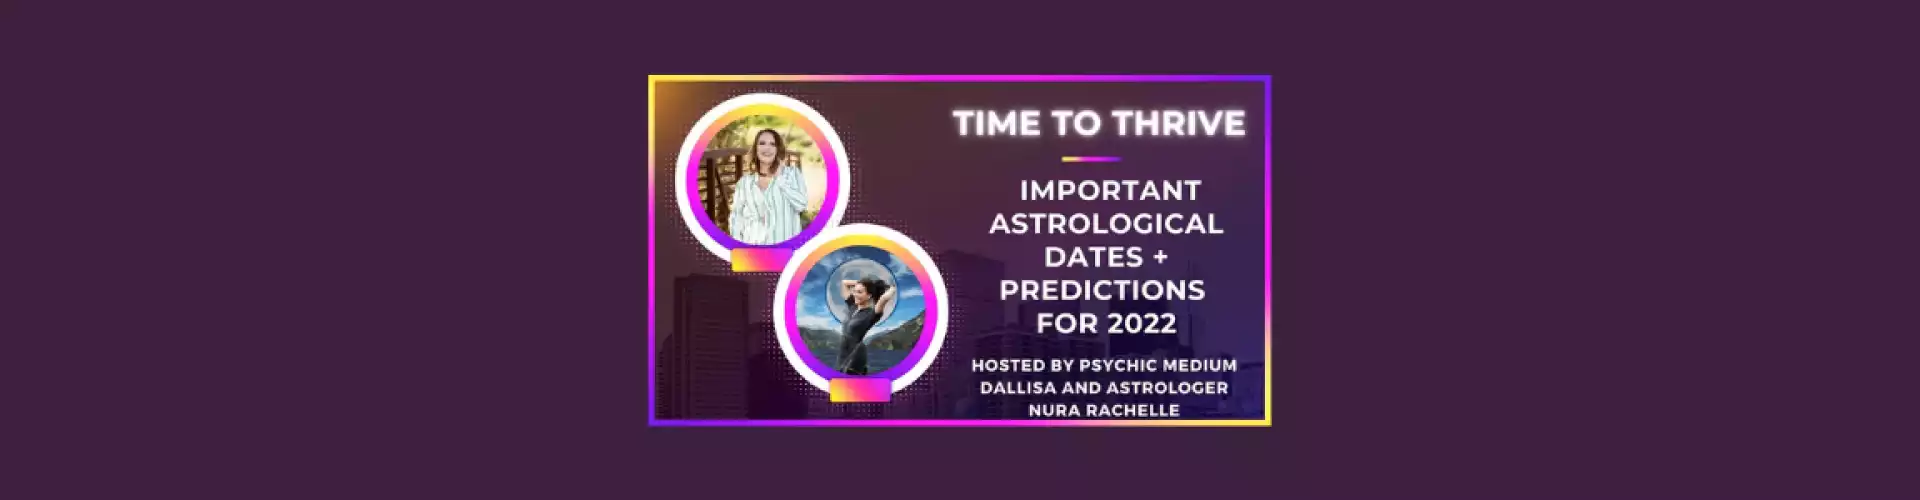 Время процветать: важные астрологические даты и прогнозы на 2022 год